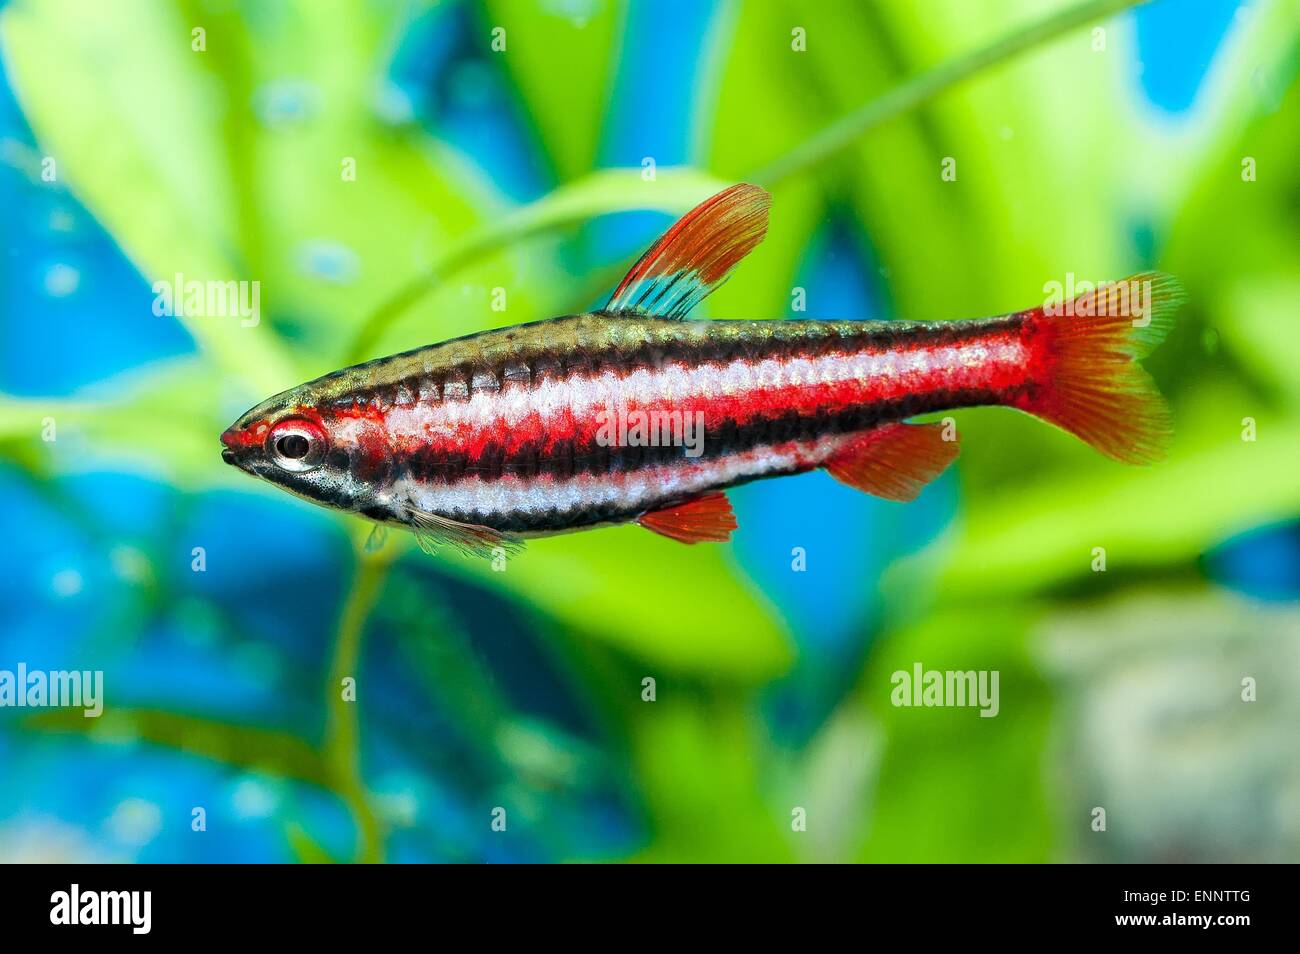 Nice aquarium fish from genus Nannostomus. Stock Photo